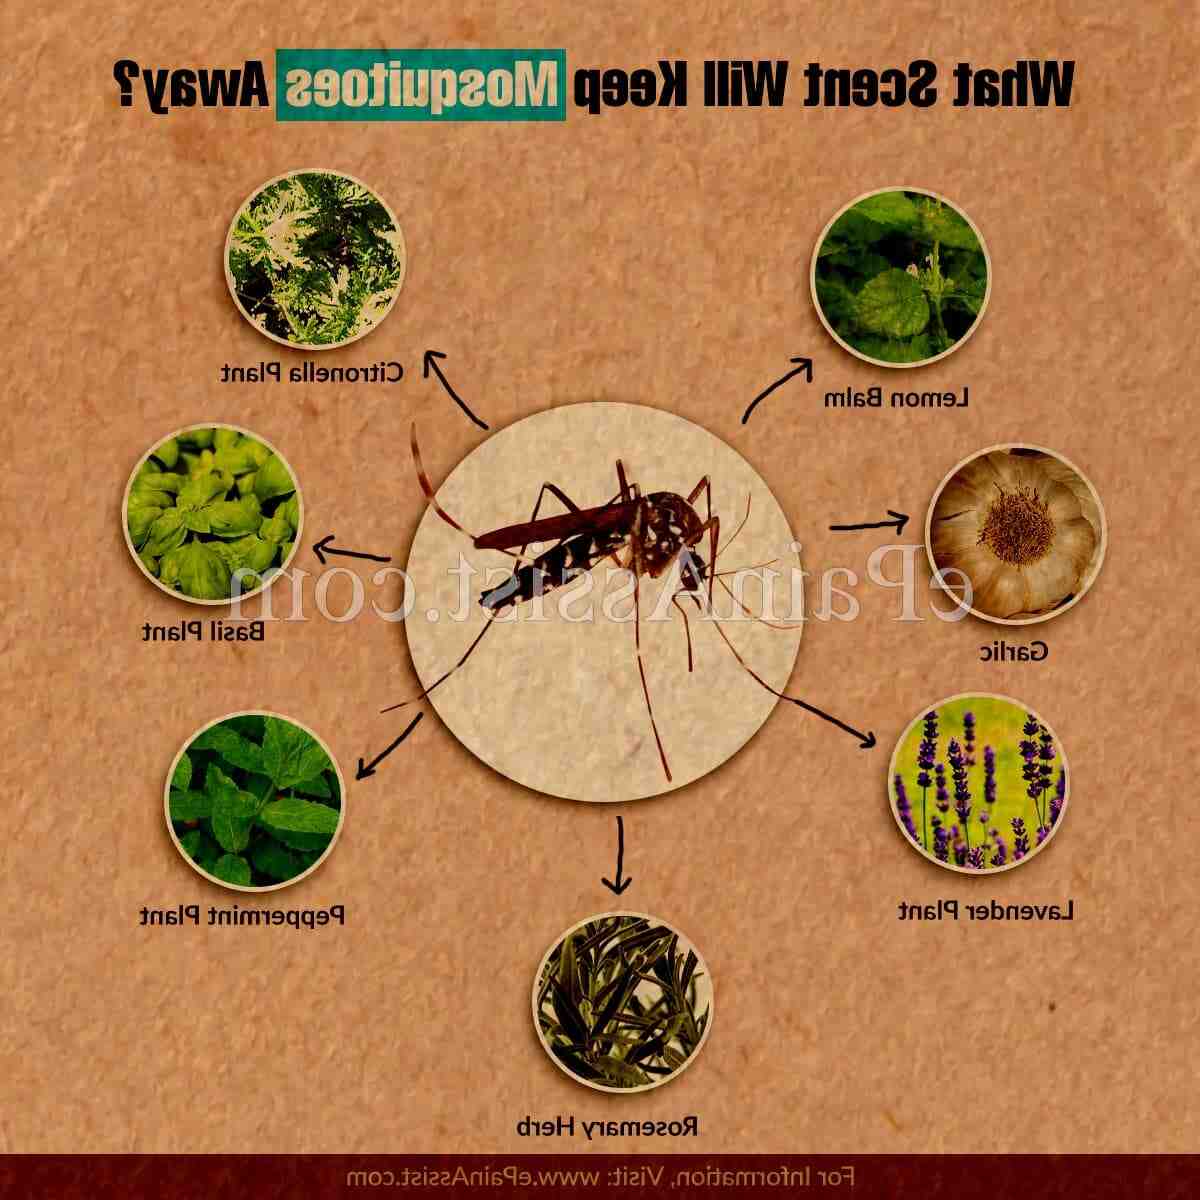 Sivrisineklere karşı en etkili ürün nedir?